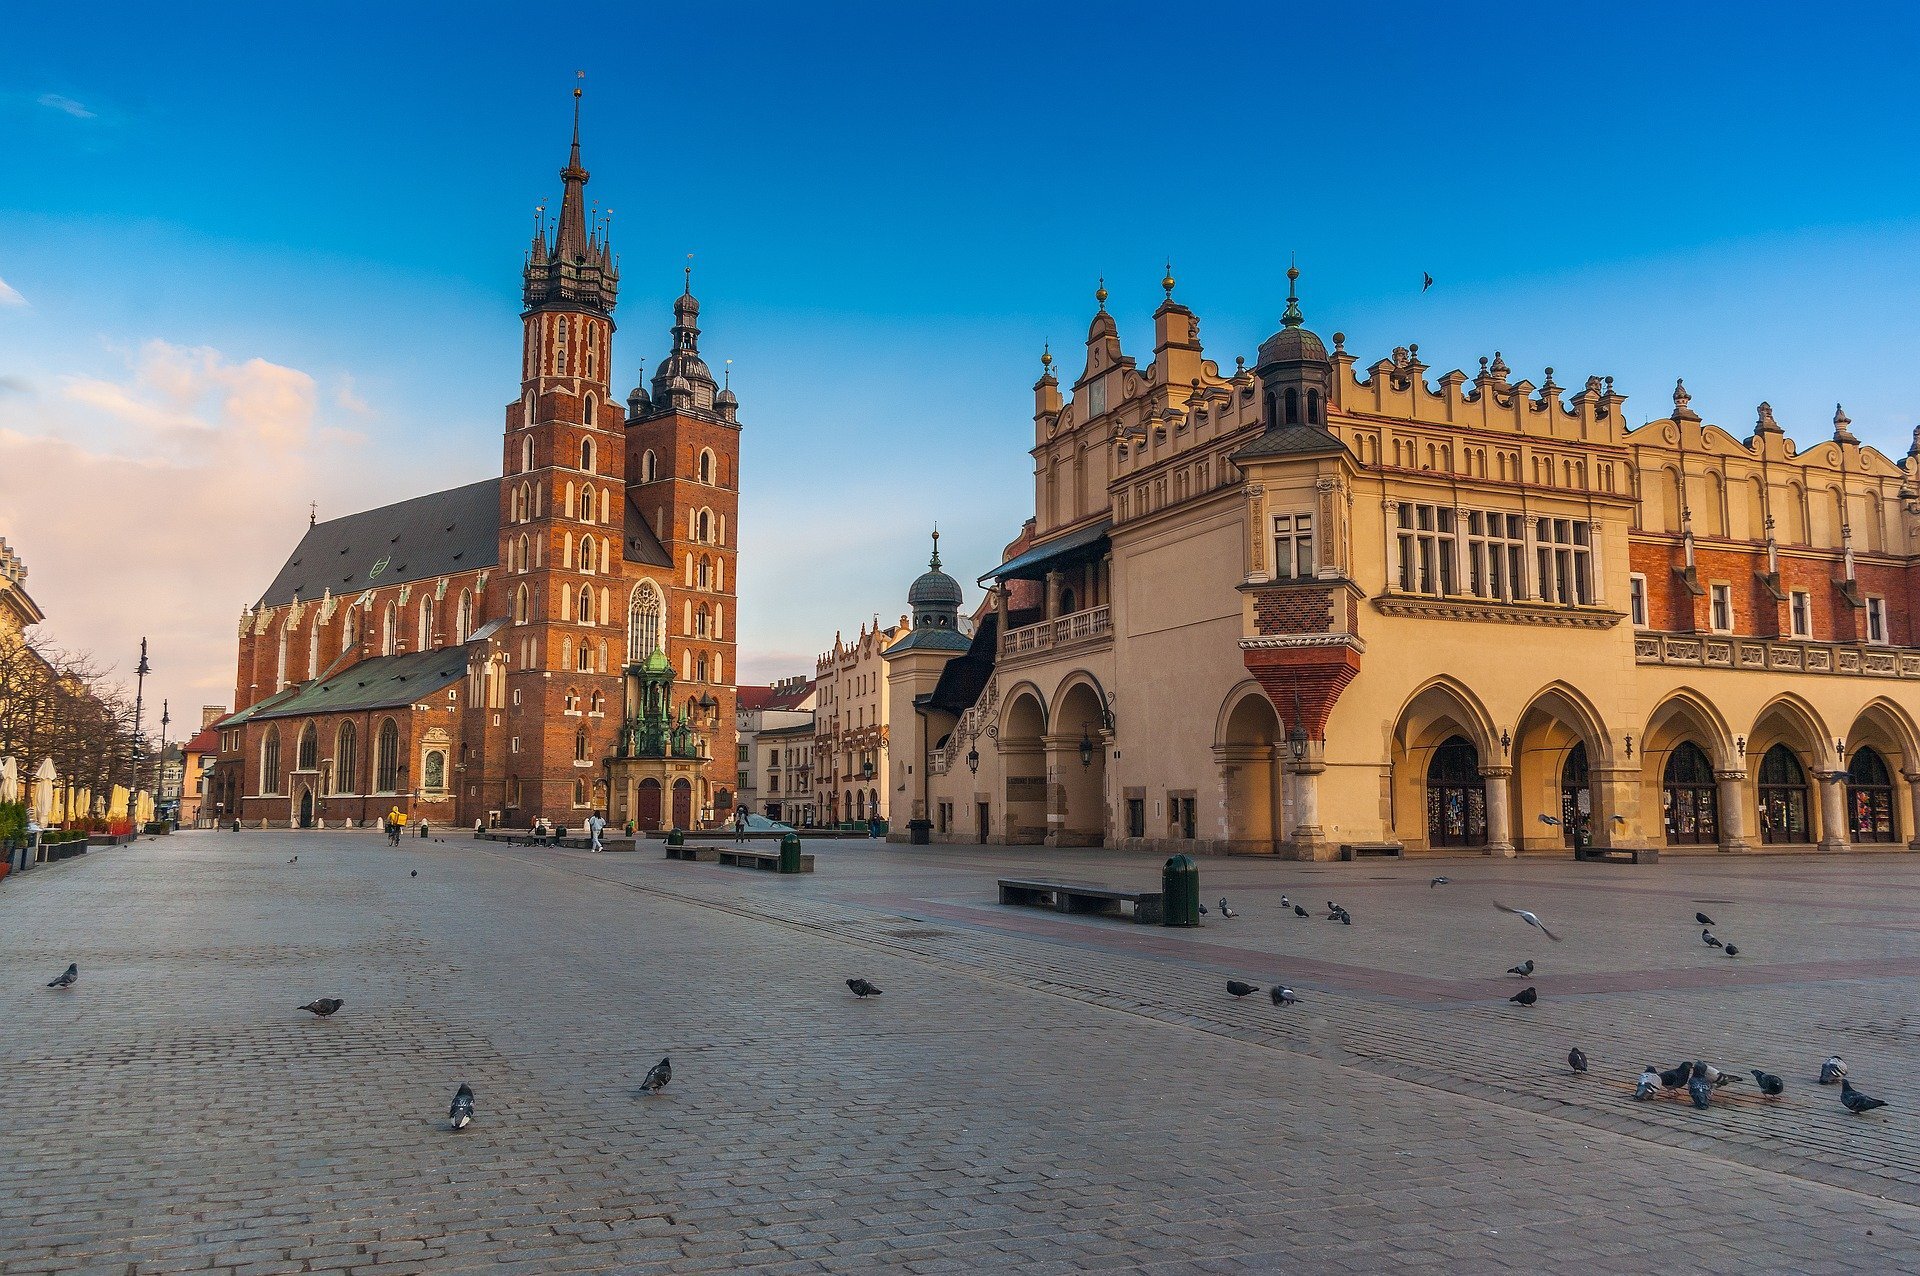 Fotografia z Krakowa, widoczny rynek Starego Miasta z Sukiennicami i wieżą Ratuszową.